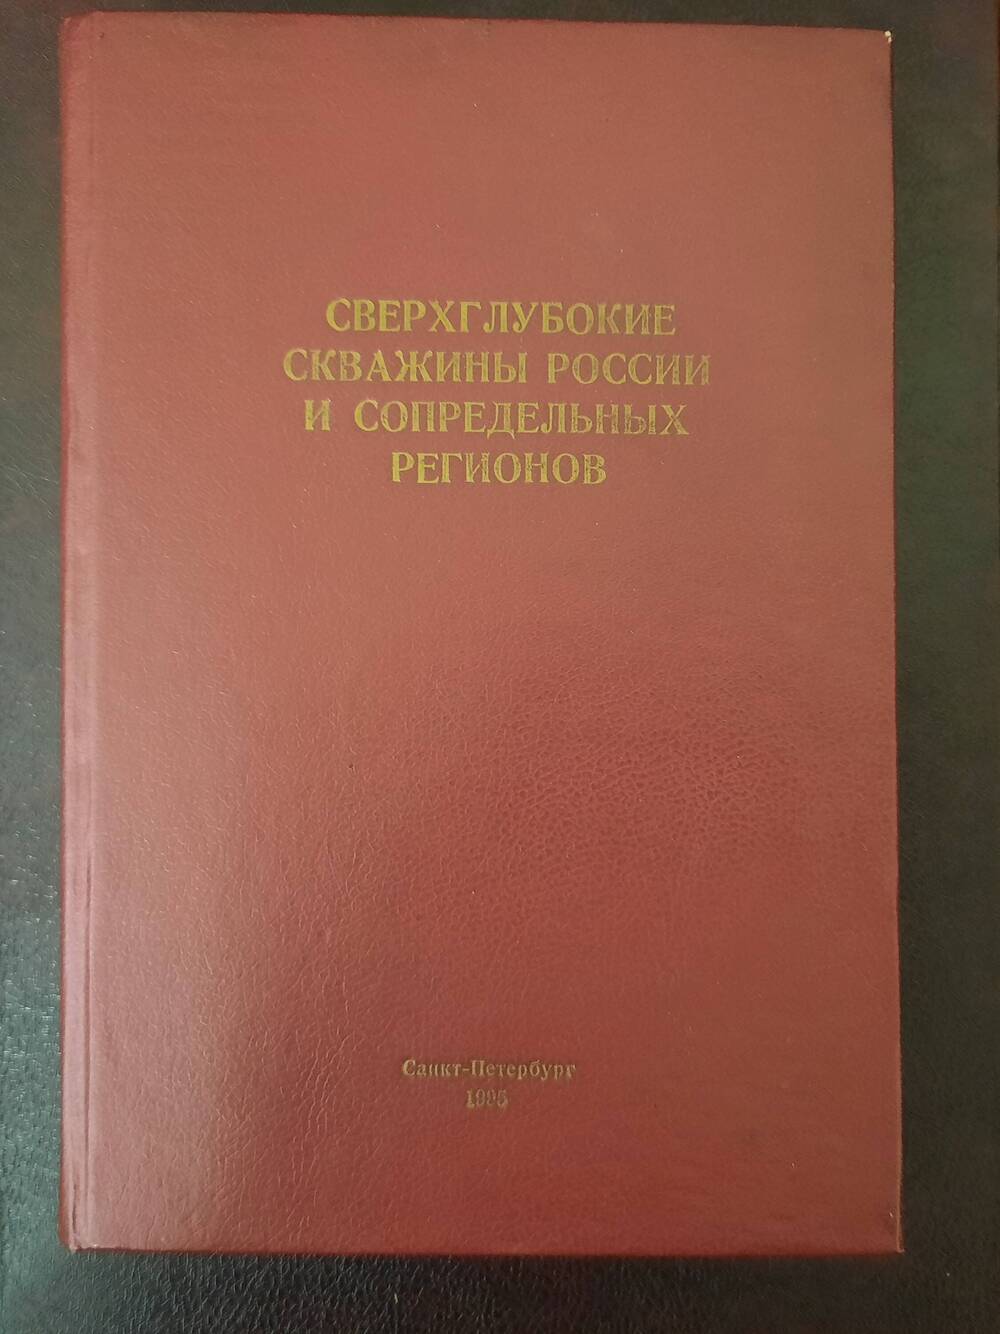 Книга Сверхглубокие скважины России и сопредельных регионов